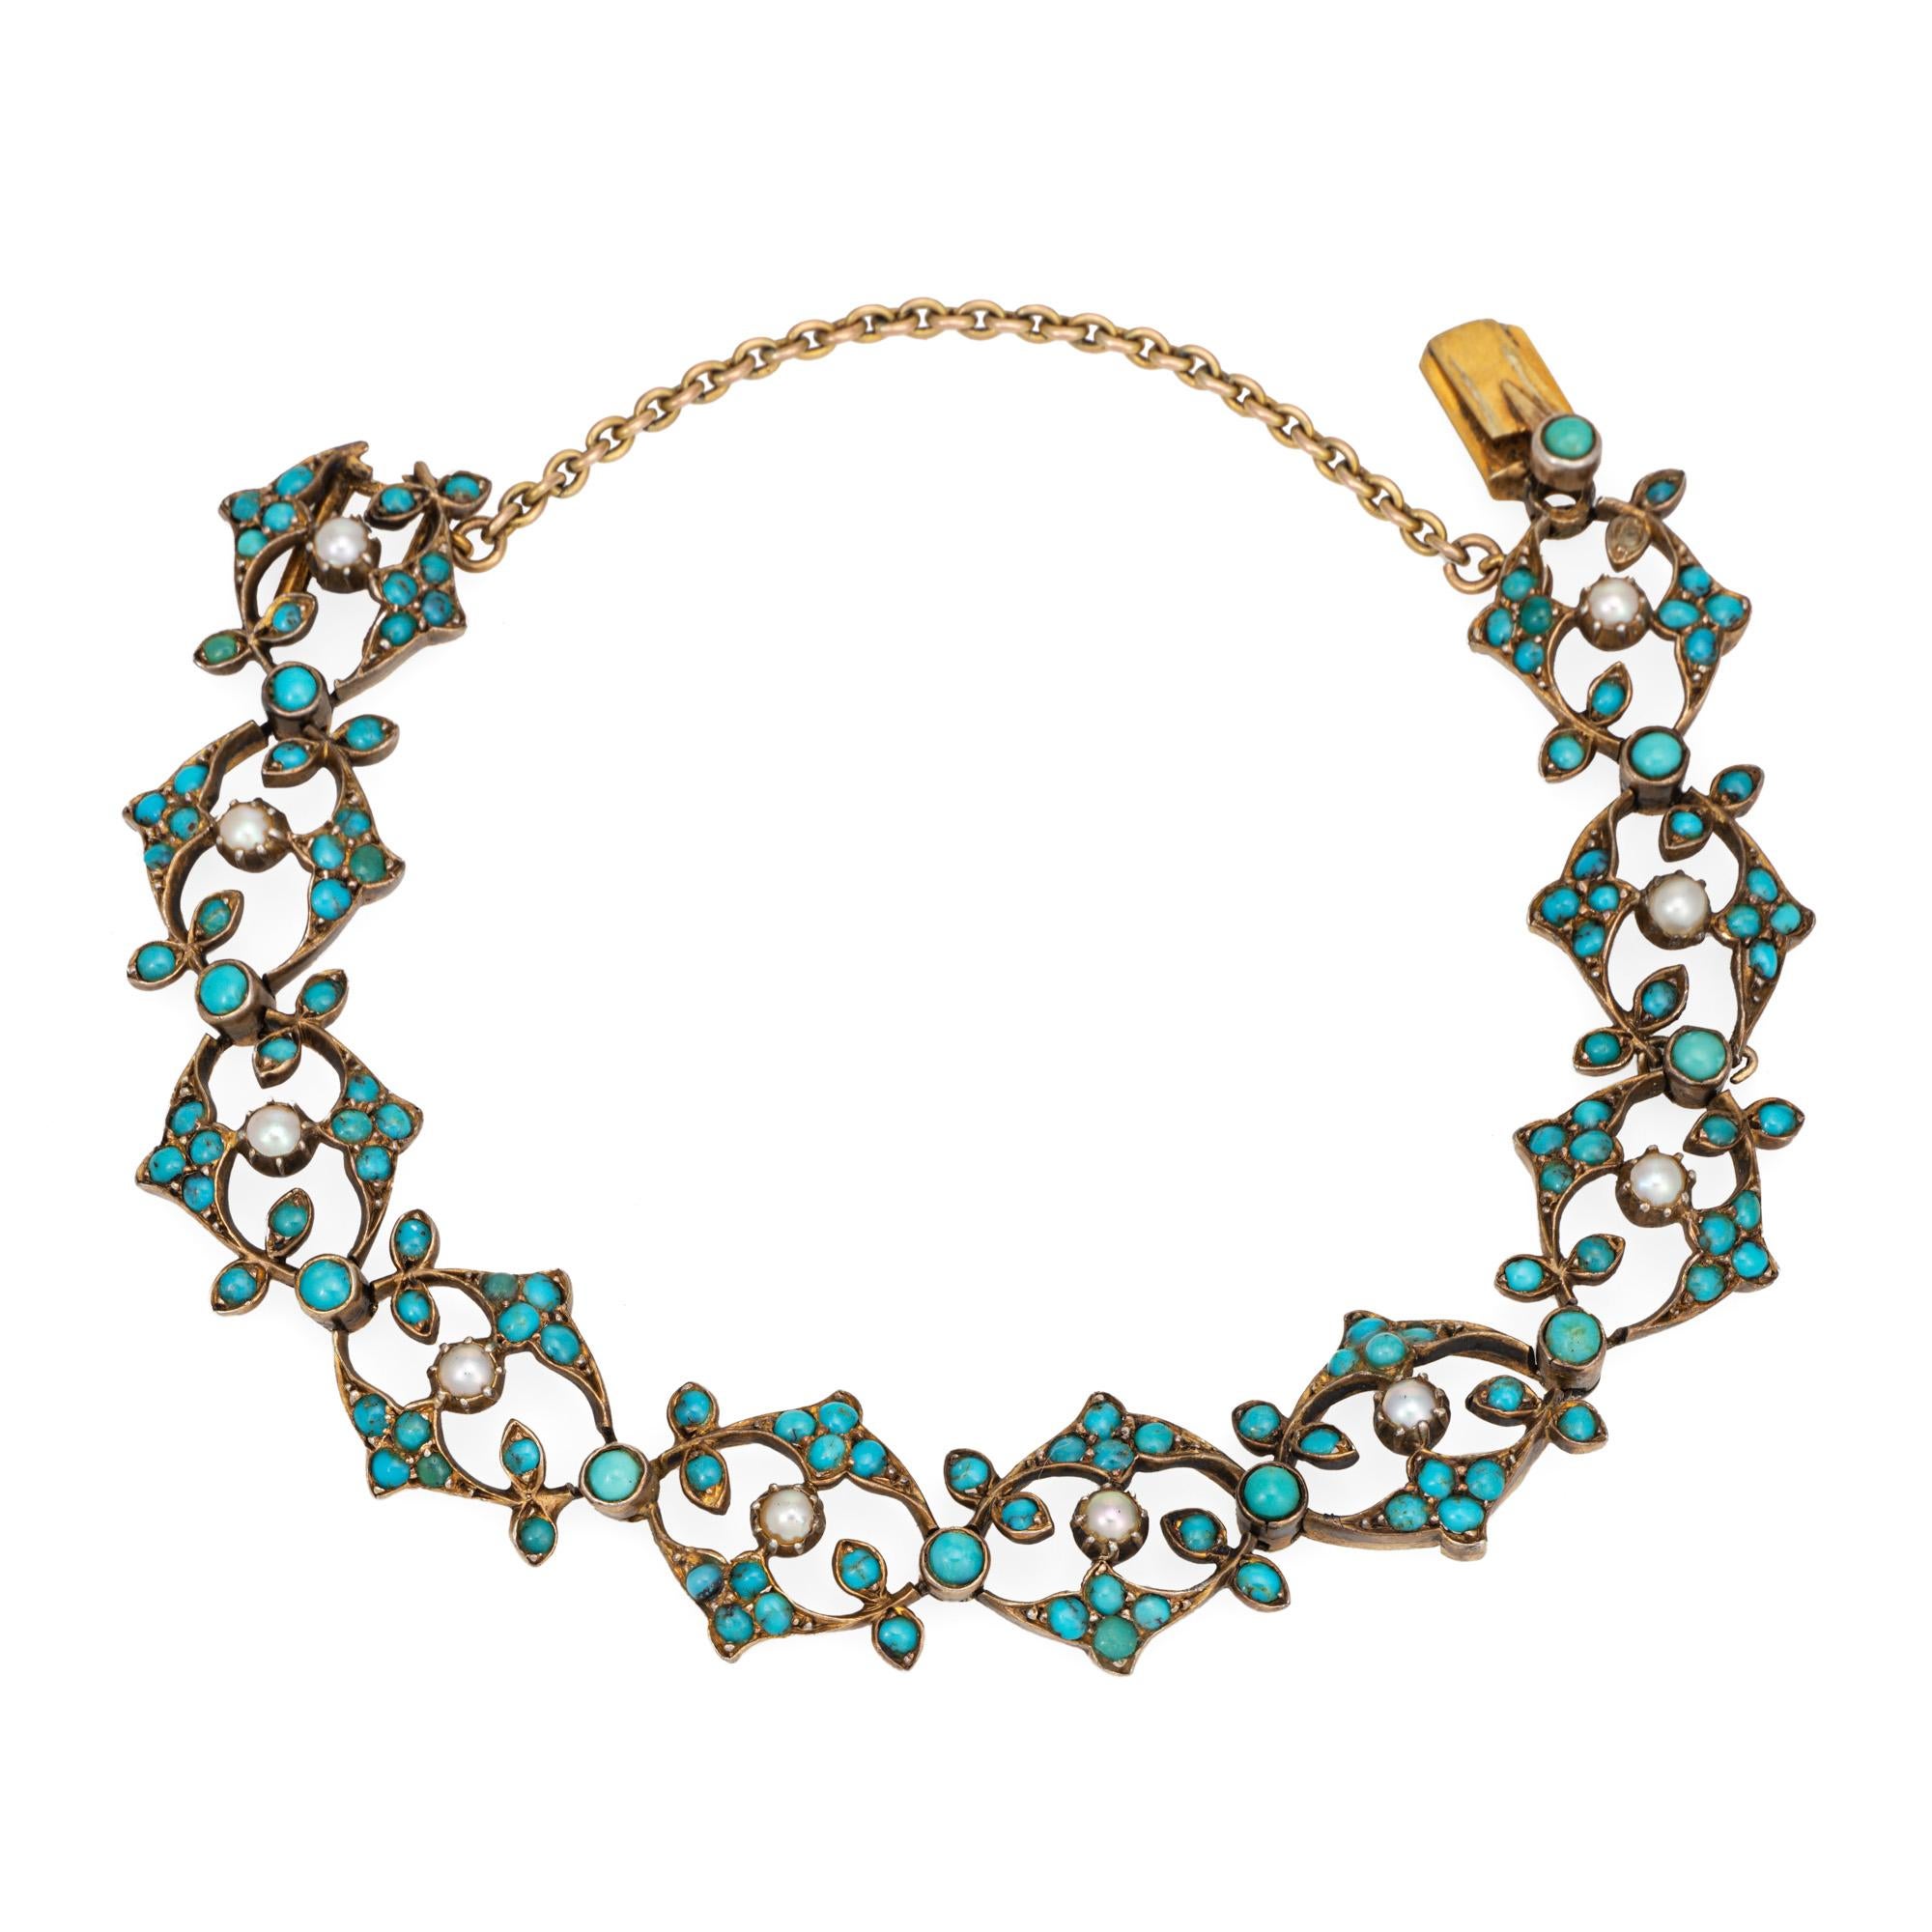 Bracelet antique victorien (circa 1880 à 1900) en turquoise et perles, finement détaillé, réalisé en or jaune 14k. 

Les cabochons de turquoise mesurent de 1,5 mm à 2,5 mm et sont rehaussés de perles de 2 mm. Note : variation de couleur de la